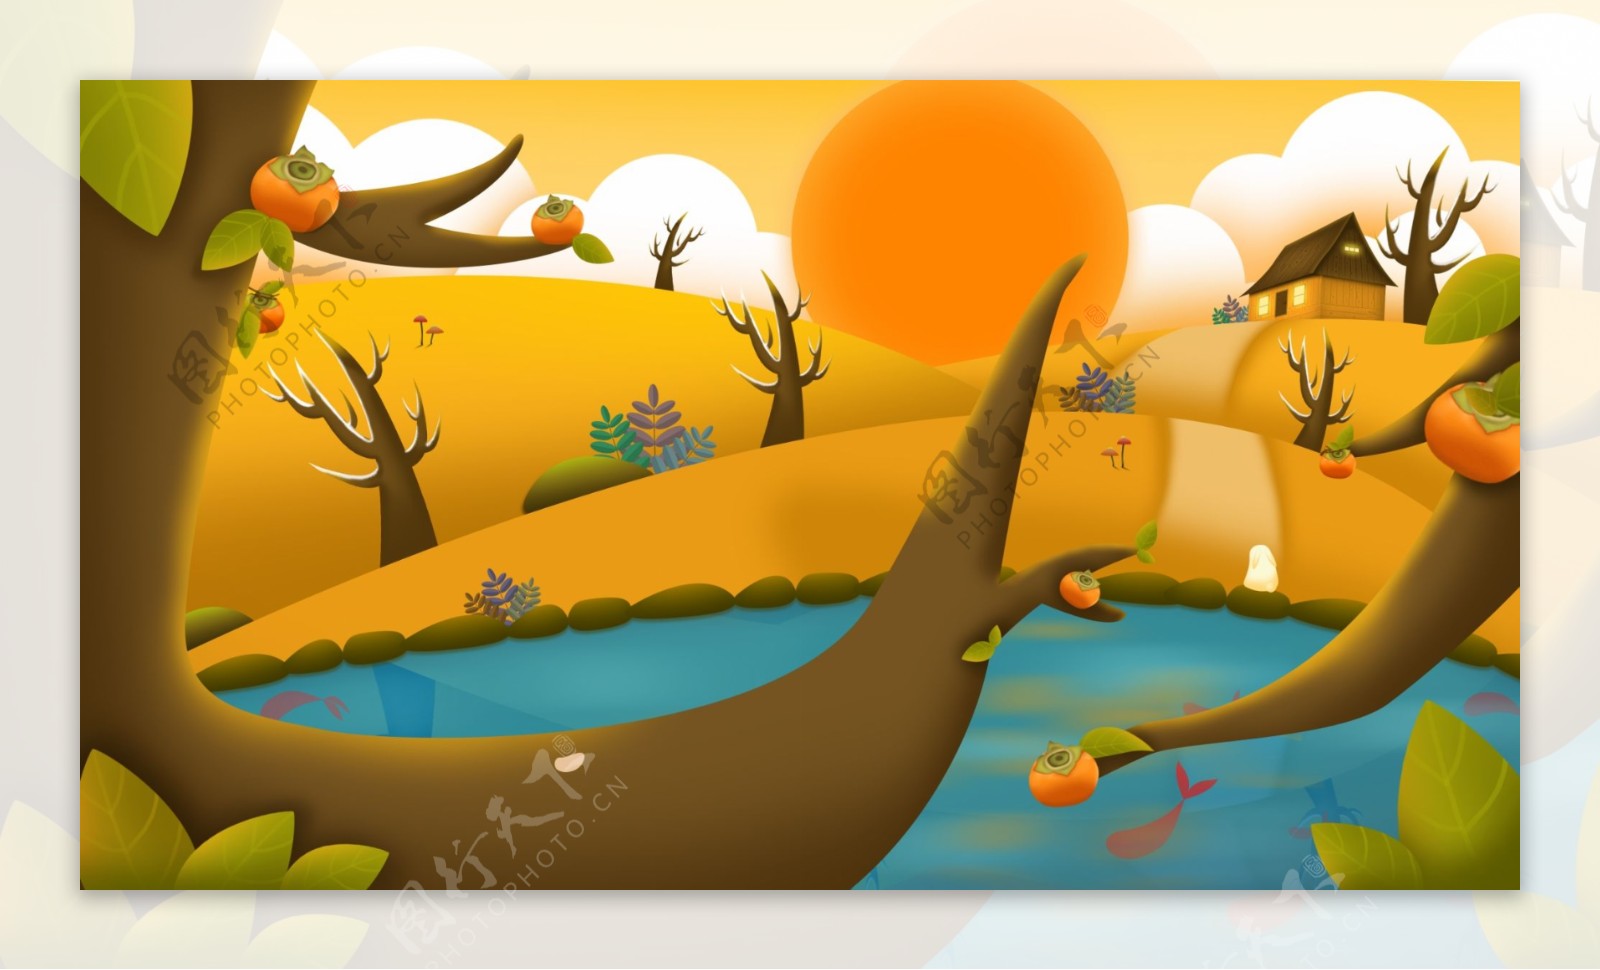 彩绘柿子树和小溪插画背景设计